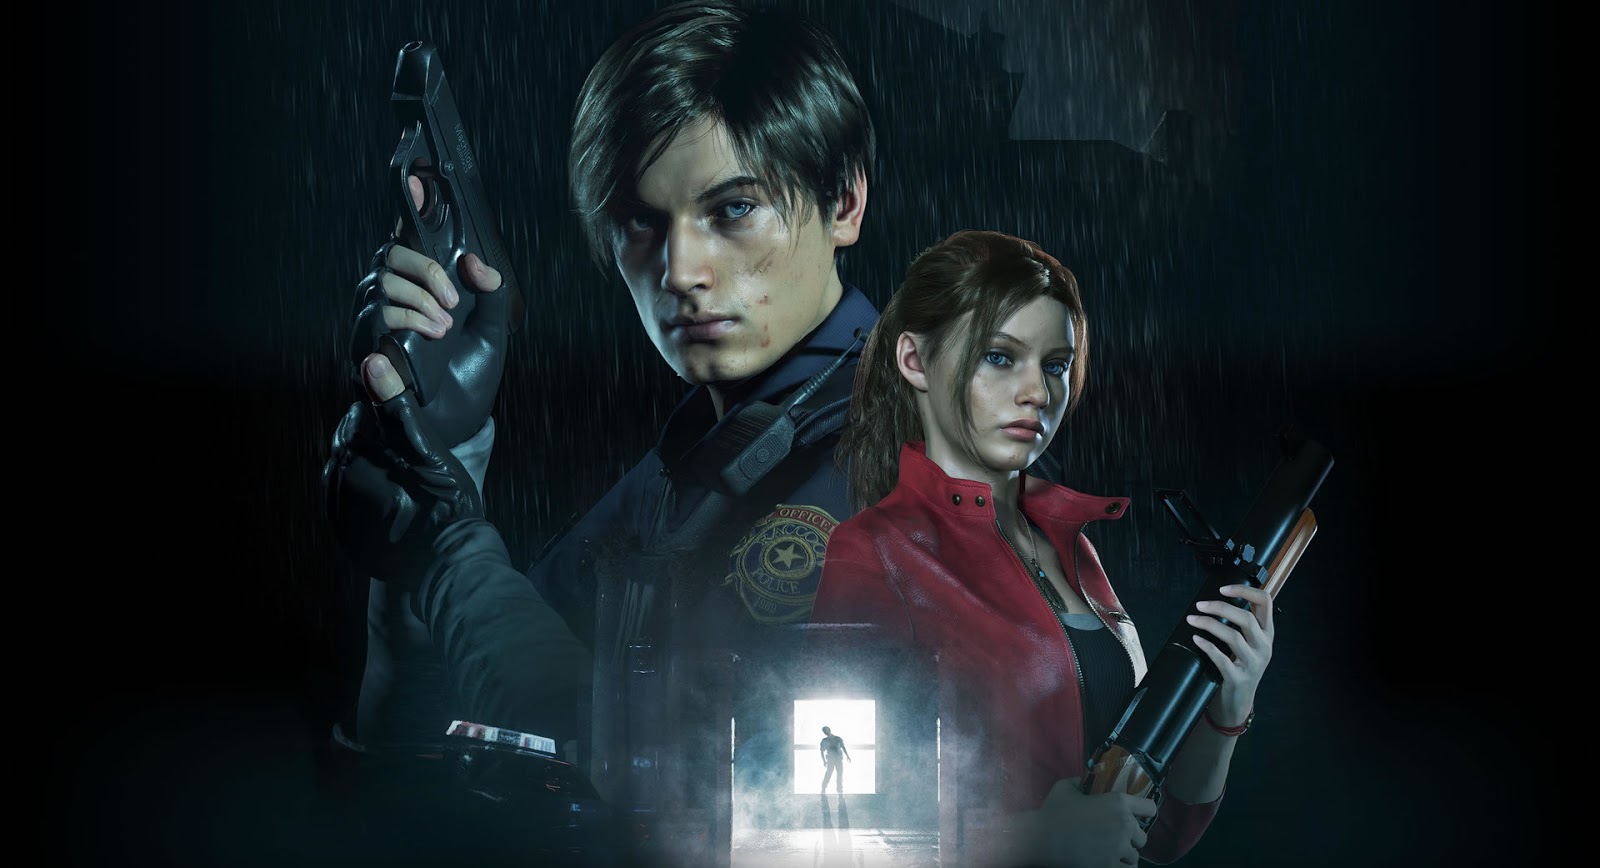 Resident Evil: A maior surpresa que existe em Code: Veronica